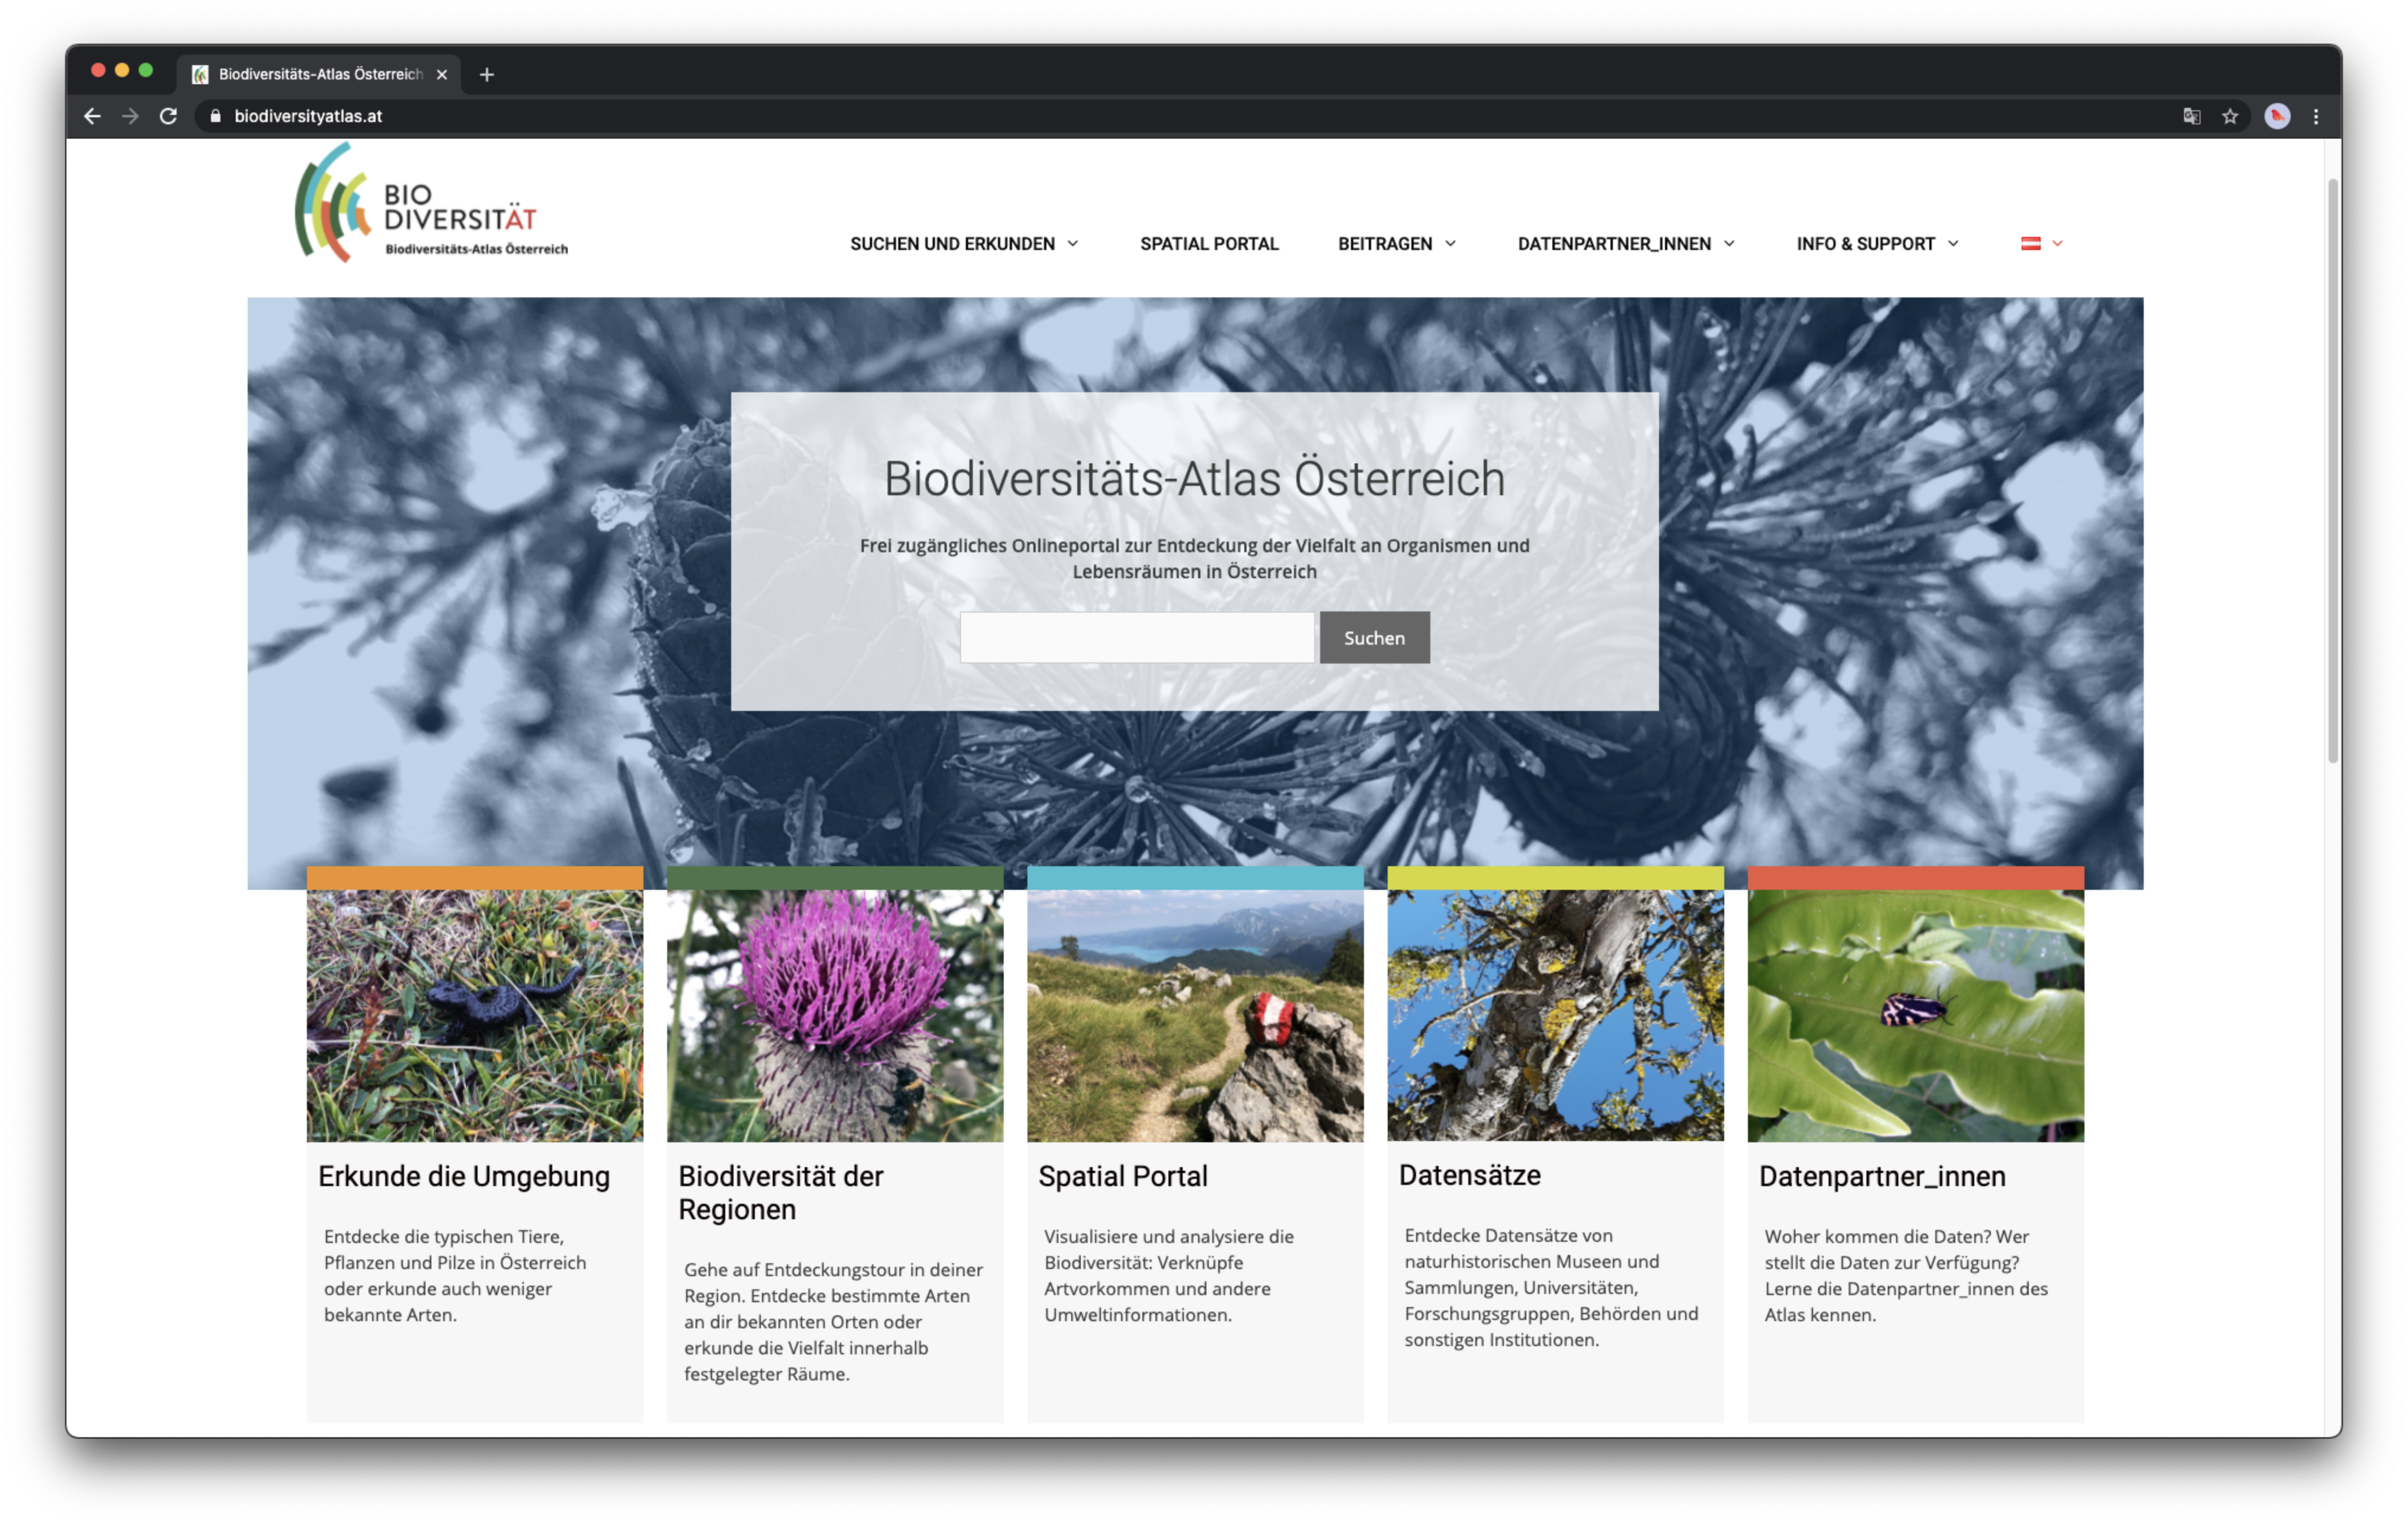 Biodiversitäts-Atlas Österreich